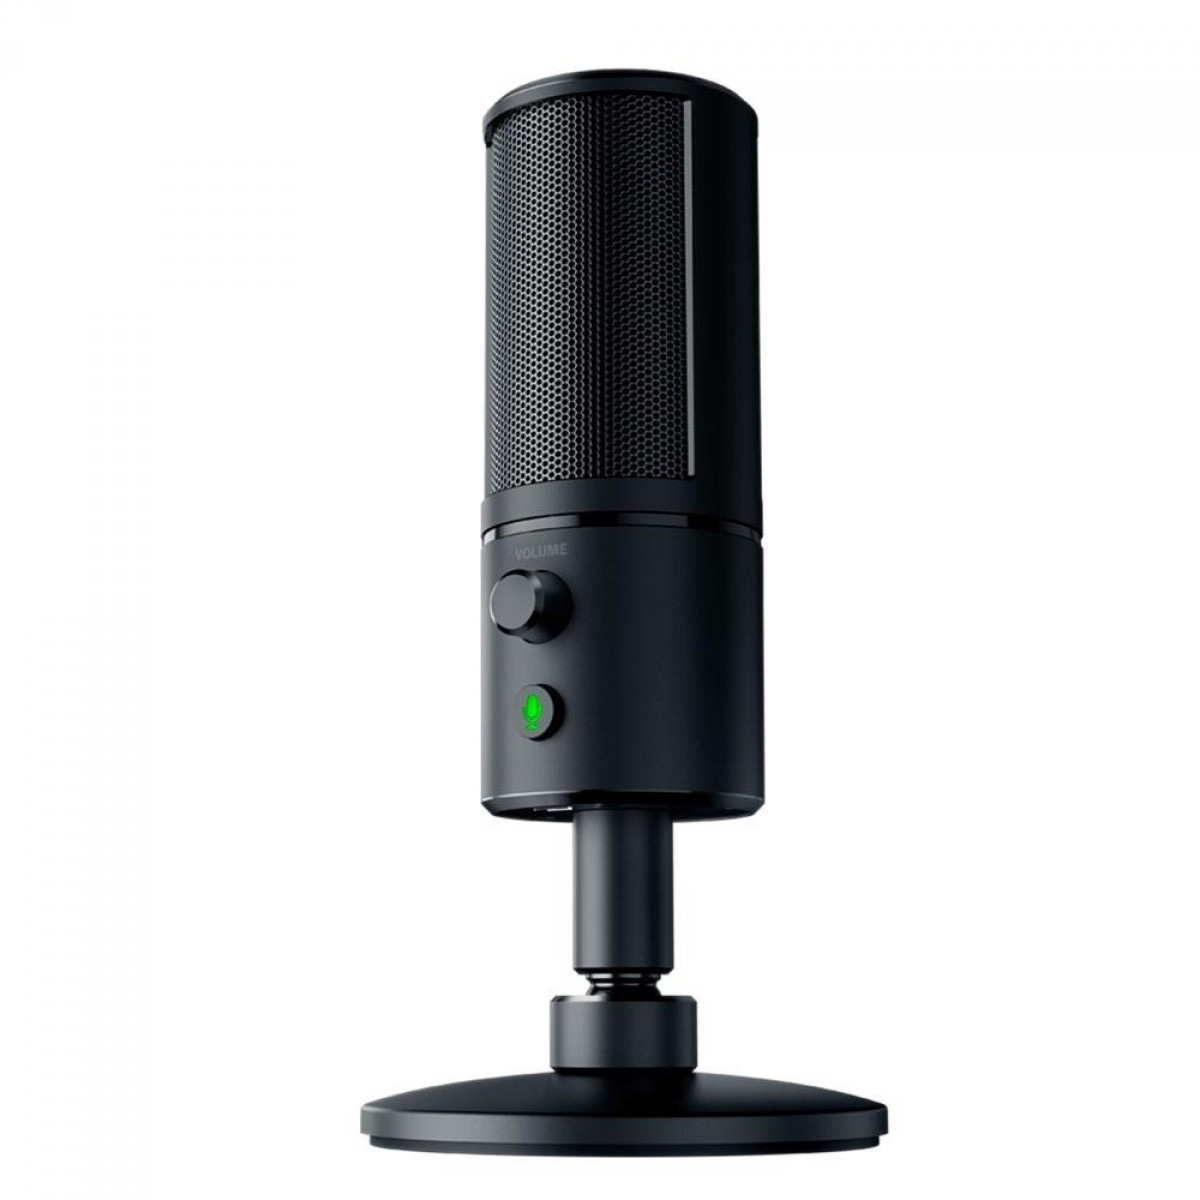 Microfone Razer Seiren X - Pedestal Ajustável - USB - Controles Integrados - RZ19-02290100-R3U1